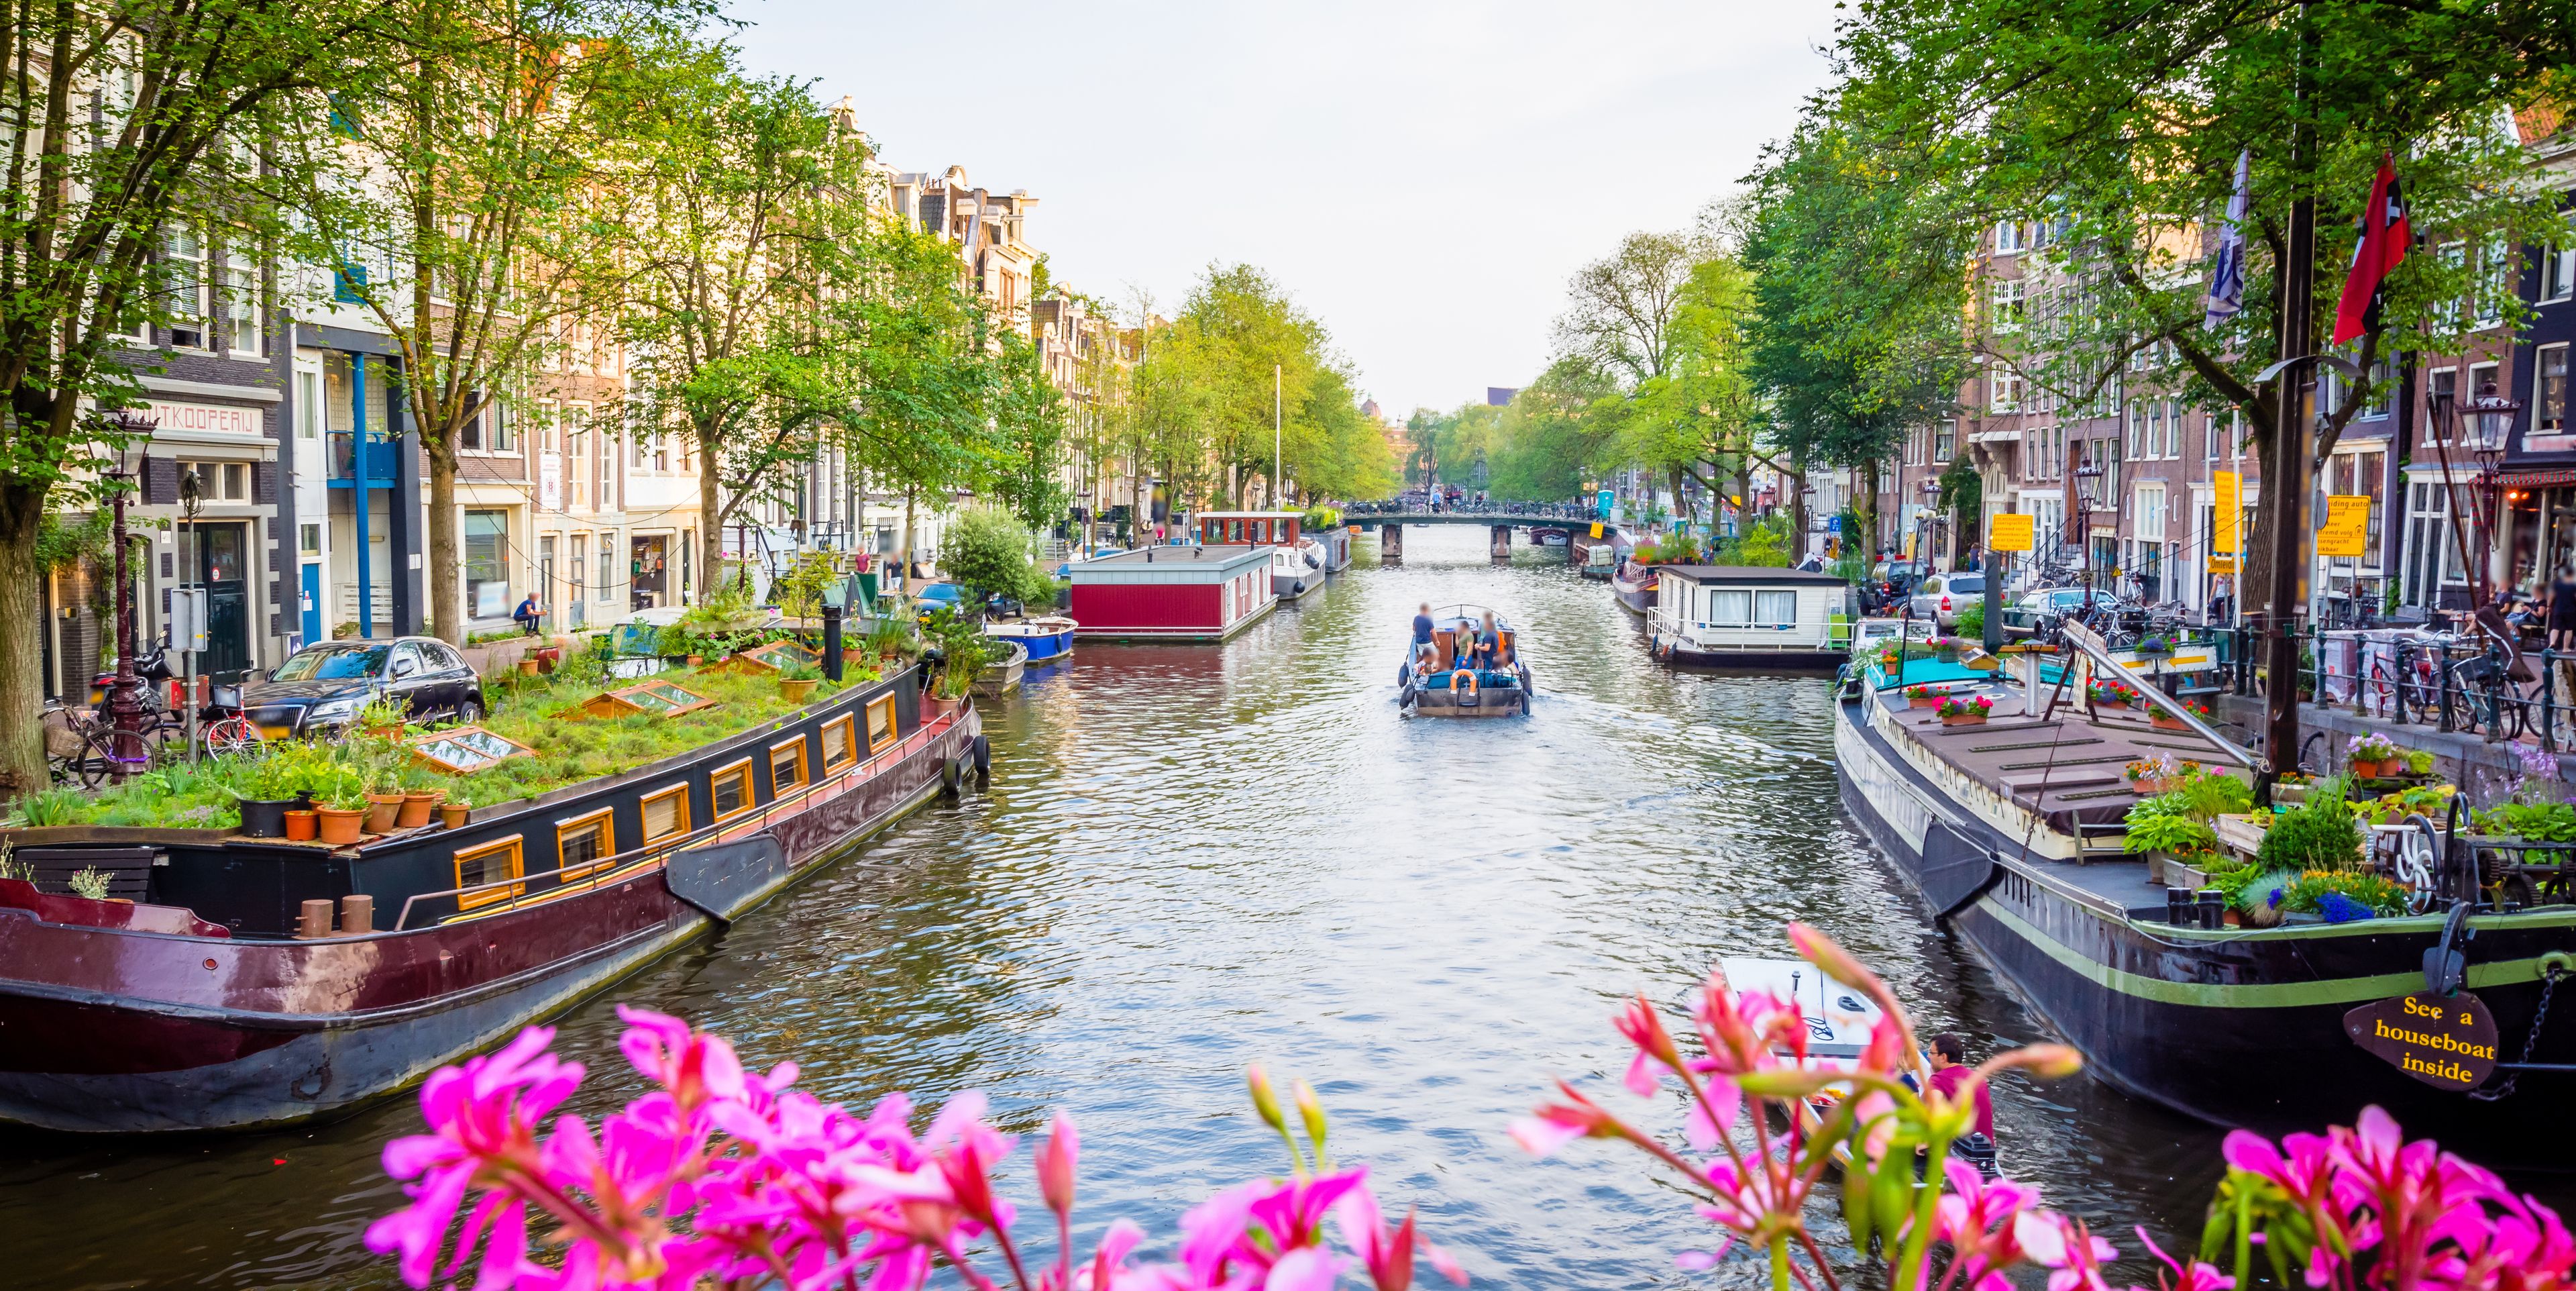 Ein Fluss in einer Stadt umgeben von zwei Häuserreihen und blühenden Blumen